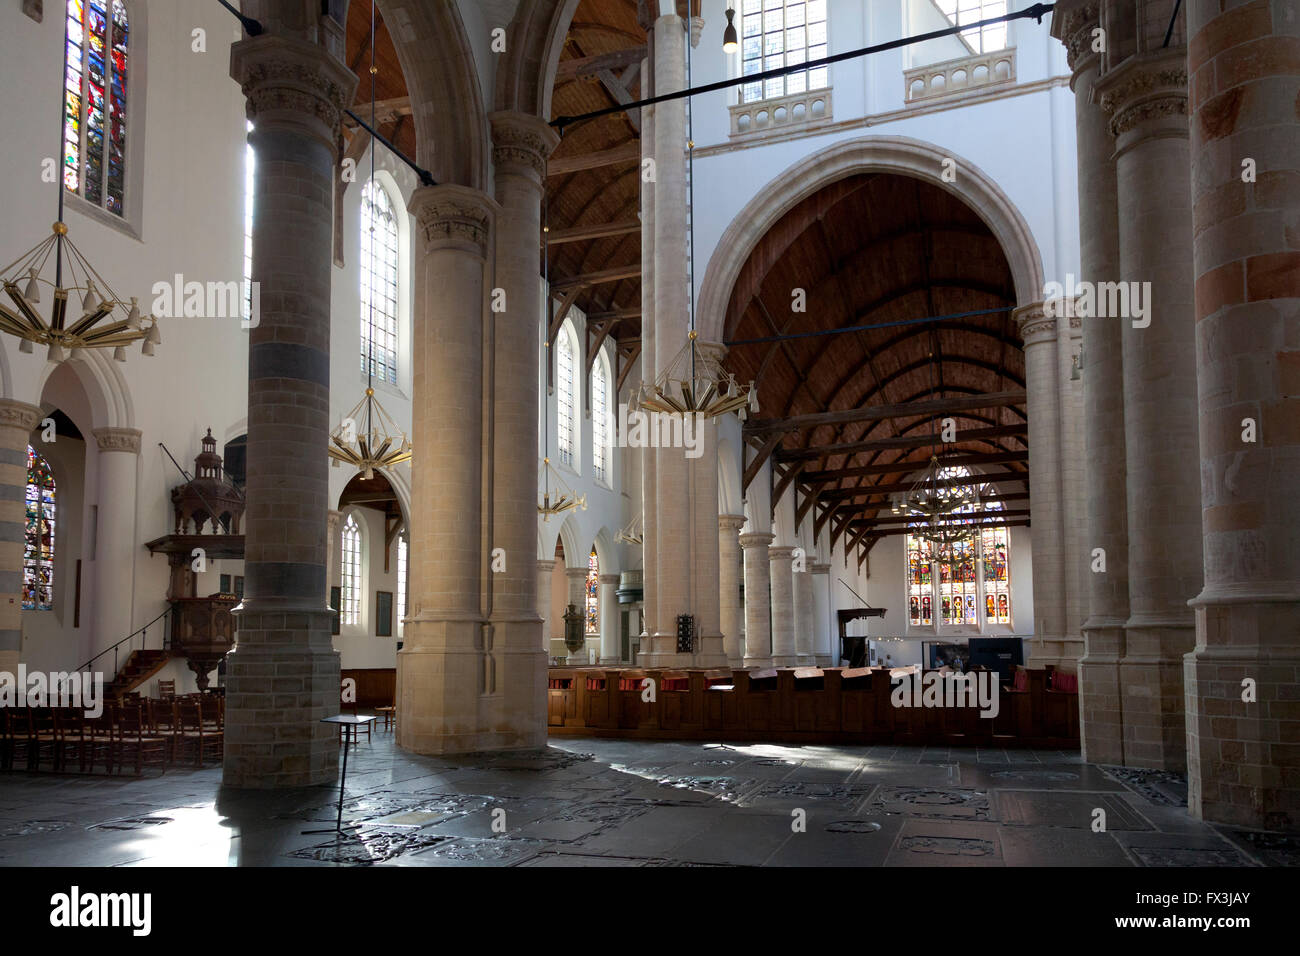 L'intérieur de la vieille église de Delft, Pays-Bas Banque D'Images